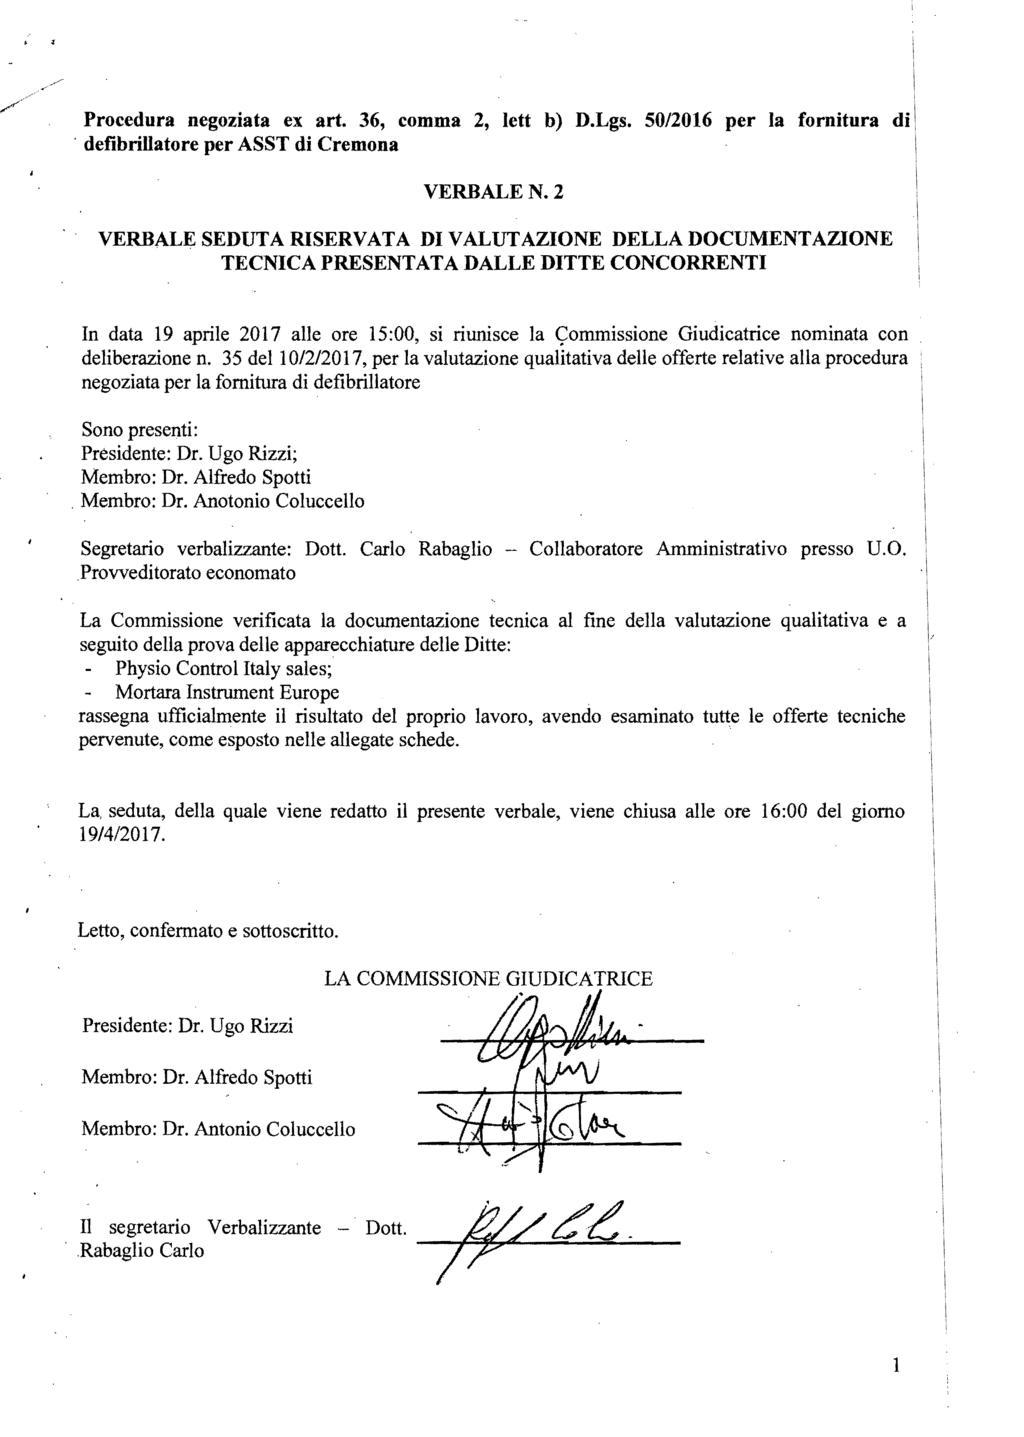 ,, Procedura negoziata ex art. 36, comma 2, lett b) D.Lgs. 50/2016 per la fornitura di, defibrillatore per ASST di Cremona VERBALEN.